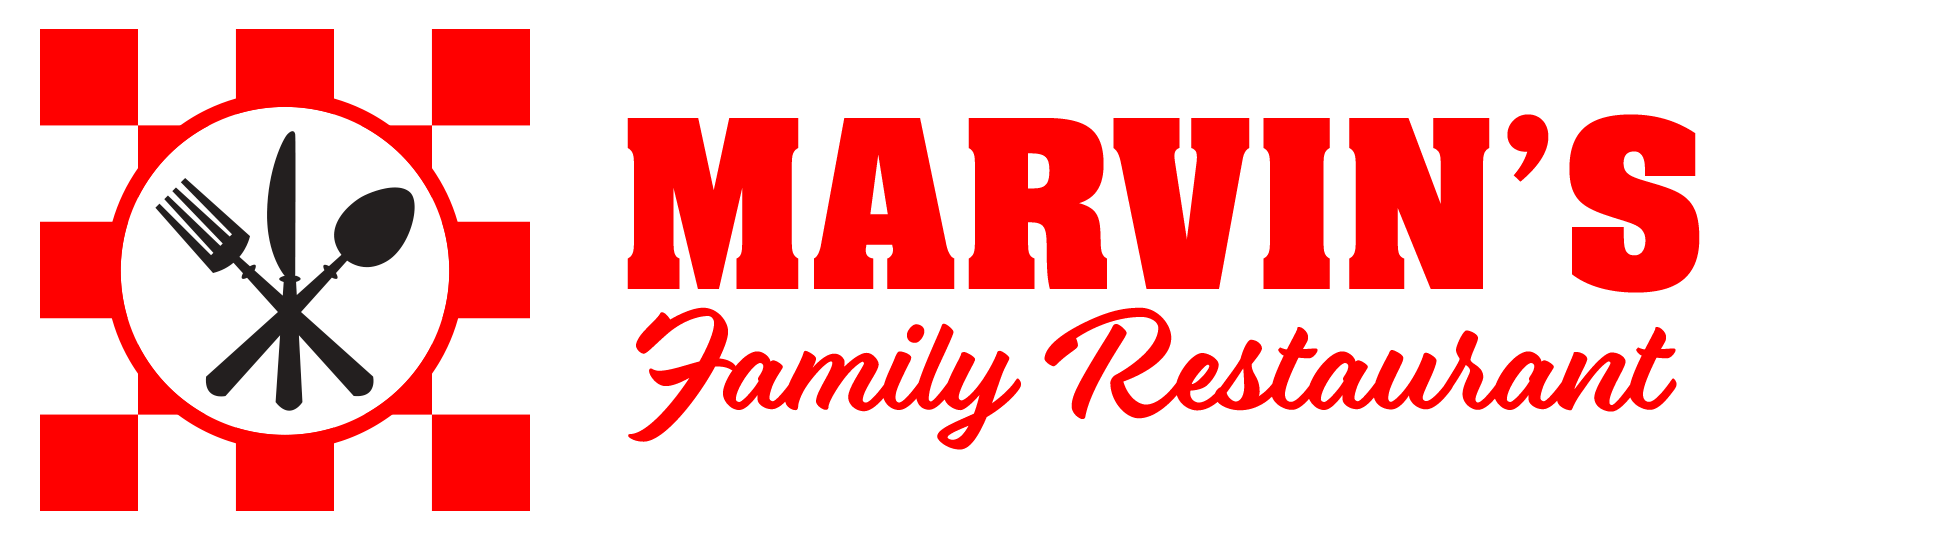 Marvin's Family Restaurant